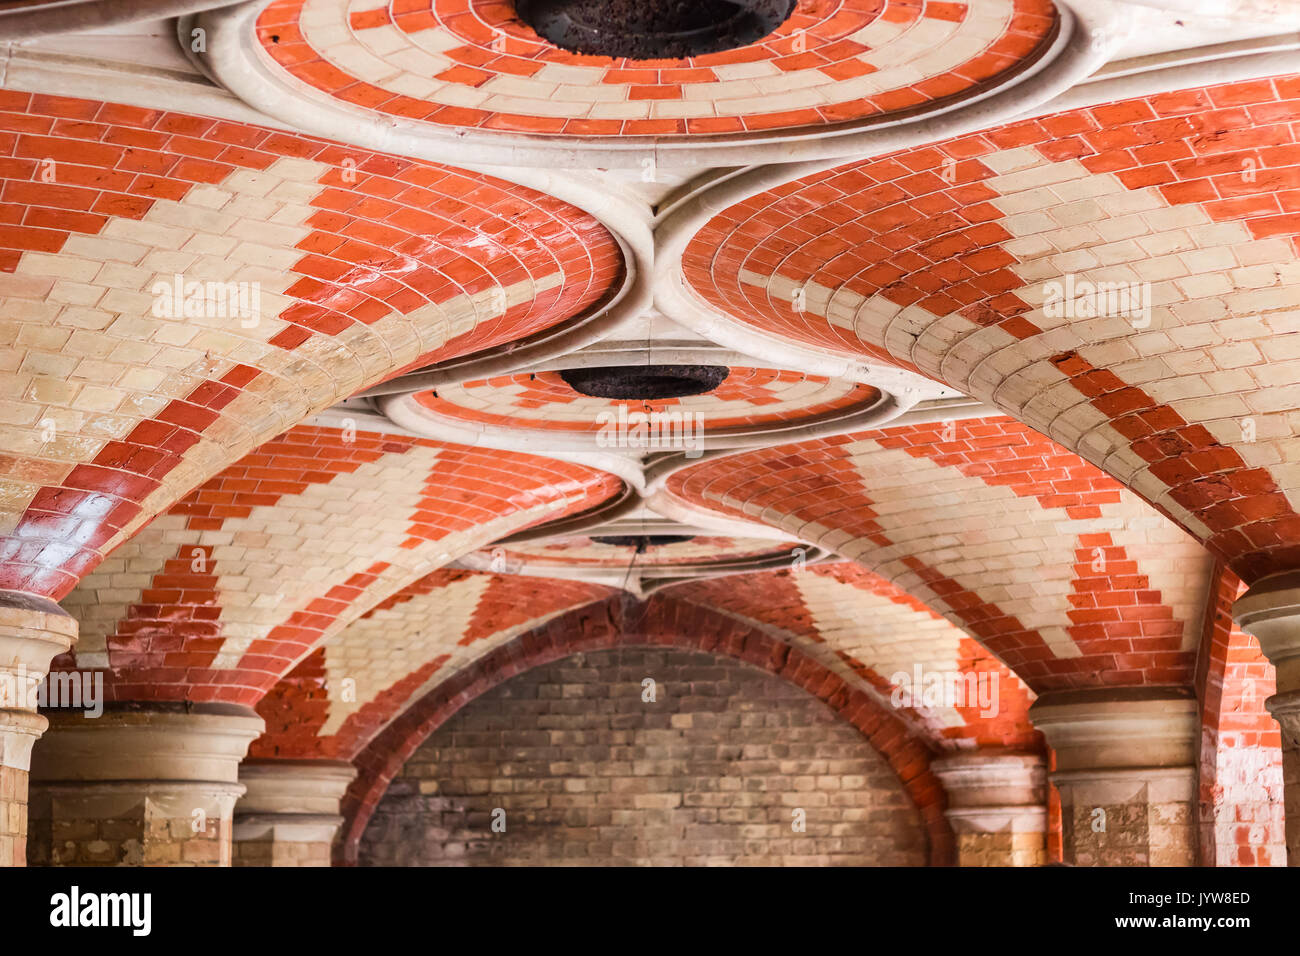 Londres, UK - 2 août 2017 - Le Palais de Cristal du métro, un ancien tunnel piétonnier victorienne dans le sud de Londres Banque D'Images